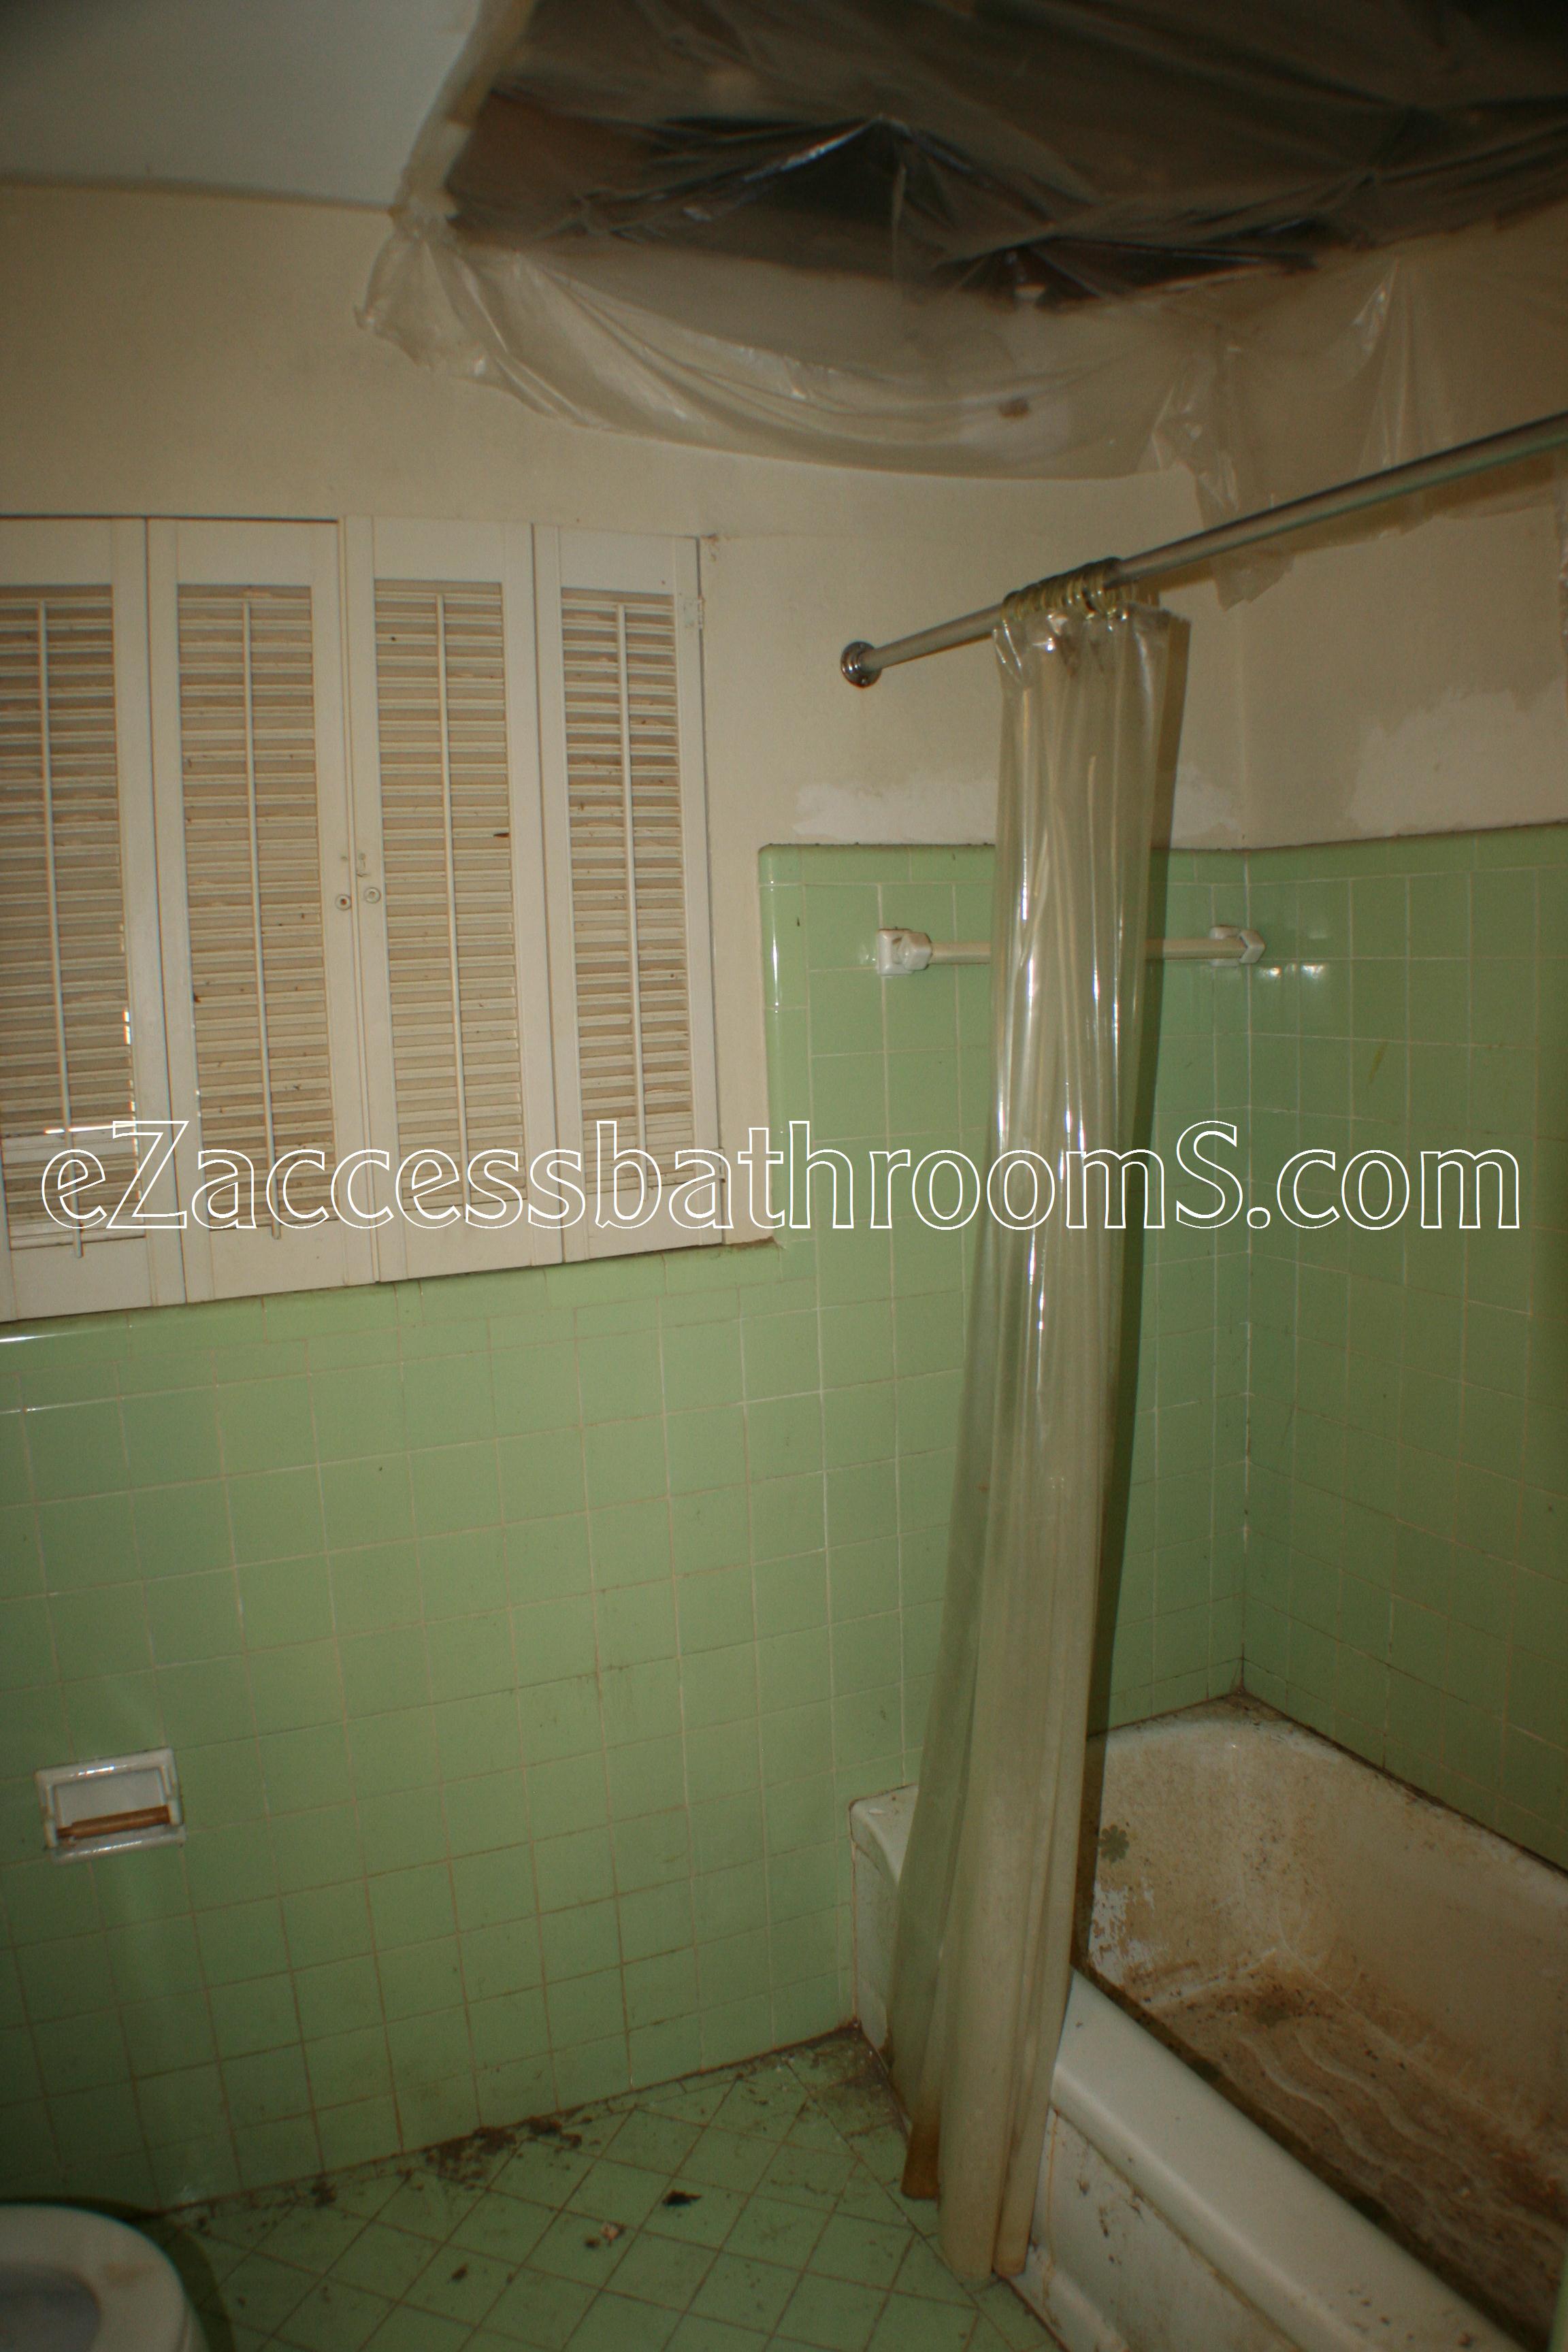 rollin shower ezaccessbathrooms.com 0013.JPG